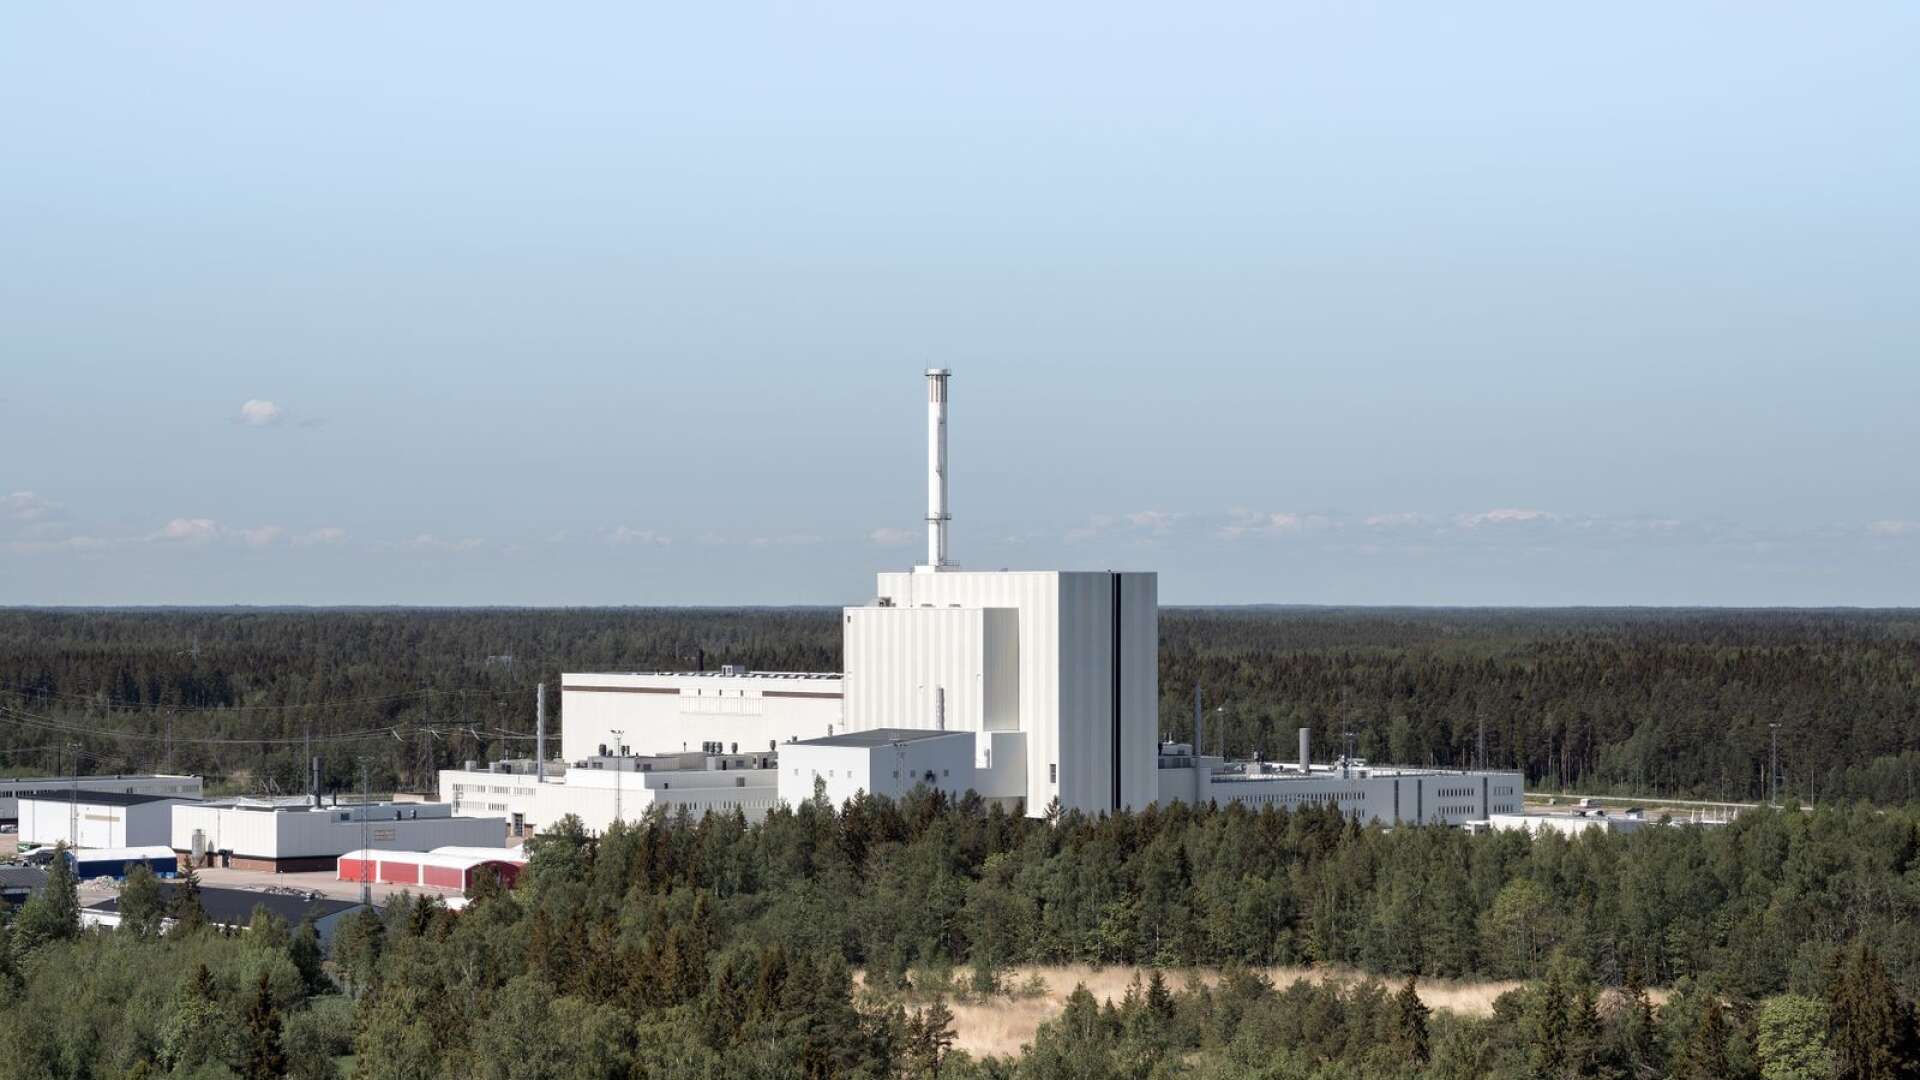 Ge legala förutsättningar för ny kärnkraft. Tillåt att det byggs nya reaktorer på fler platser än där det finns befintliga kärnkraftverk, skriver Ulf Kristersson och Pål Jonson.